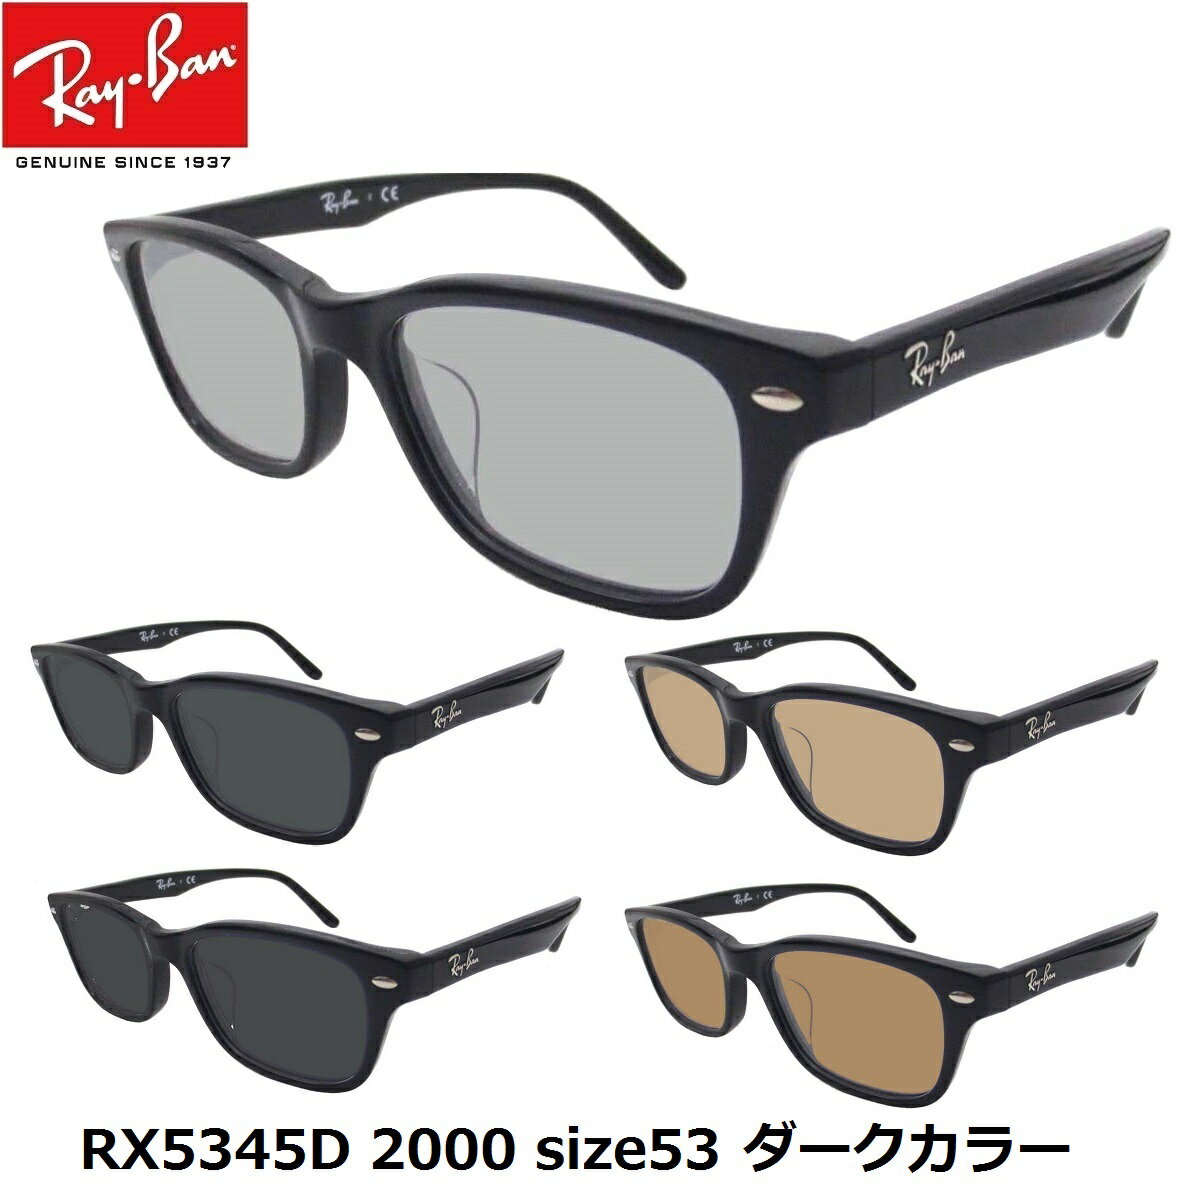 EYEMAXオリジナルサングラスカラーレイバン サングラス ダークカラー Ray-Ban RX5345D-2000（53）アジアンフィット セルフレーム メンズ レディース 男女兼用 UVカットカラーレンズ付き 度なしあす楽対応